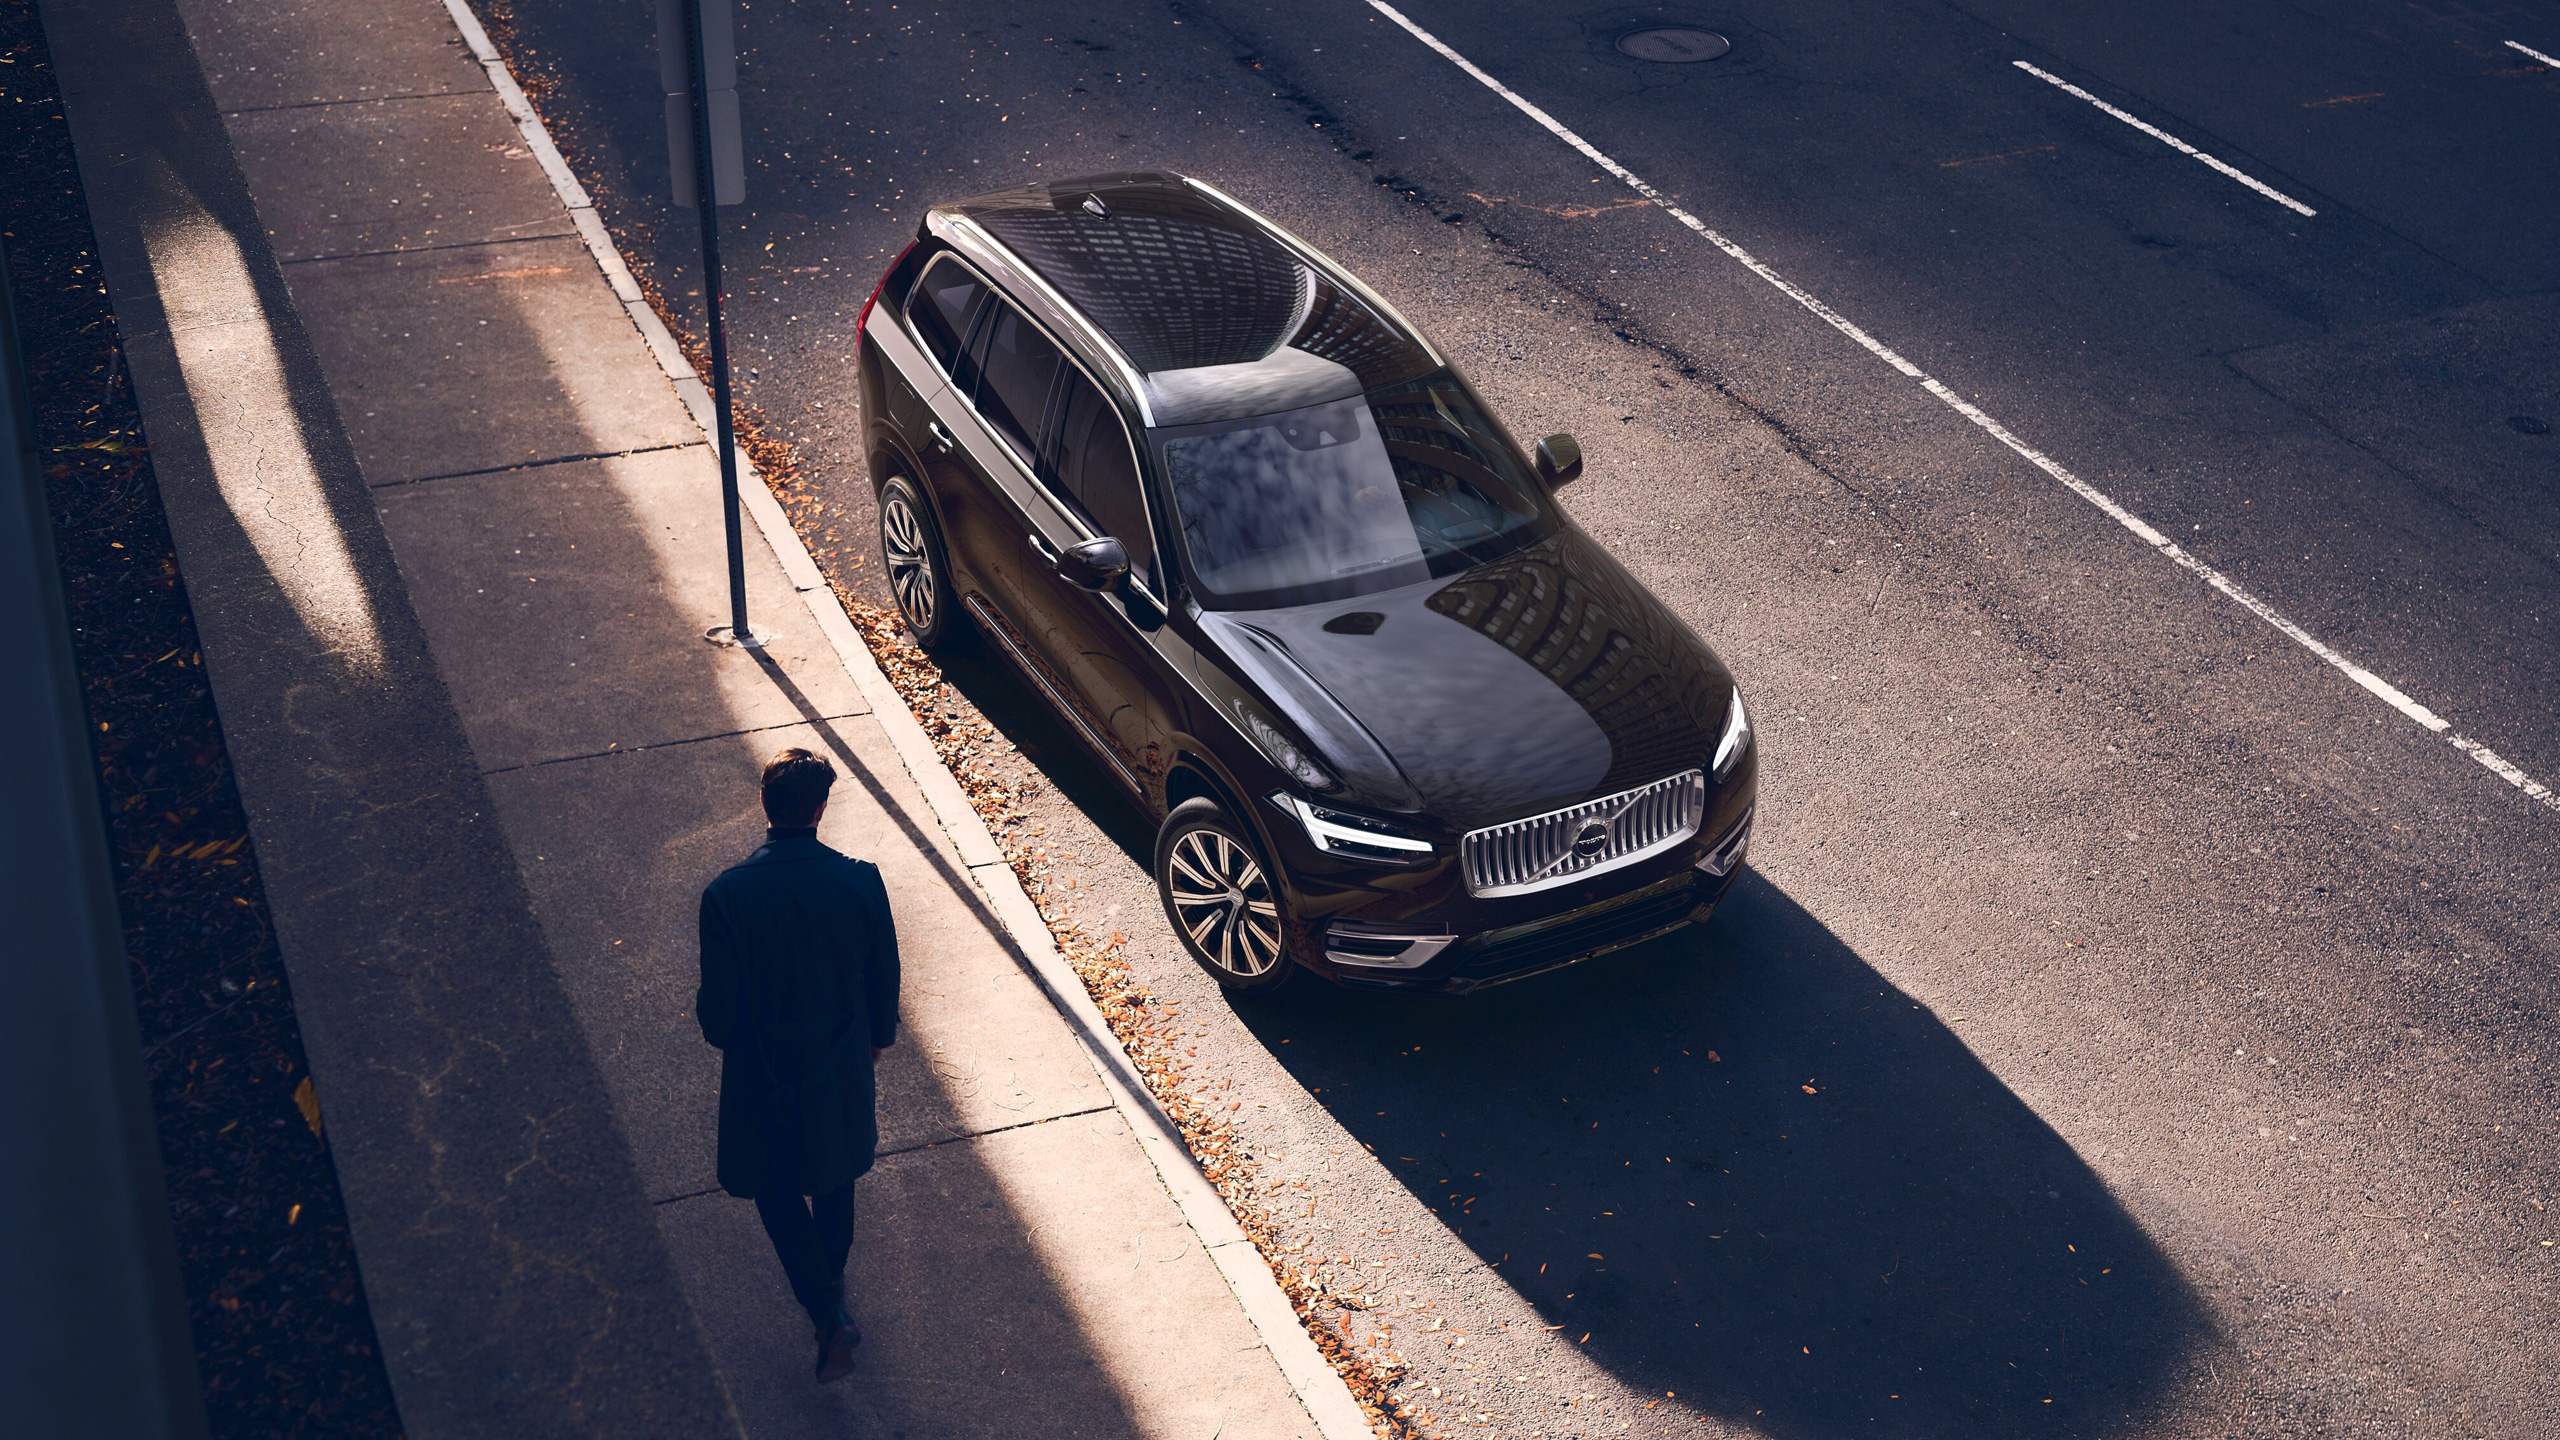 Vooraanzicht van bovenaf van de Volvo XC90 in Onyx Black, geparkeerd in een straat terwijl een man komt aanlopen, de zon staat laag en werpt lange schaduwen.